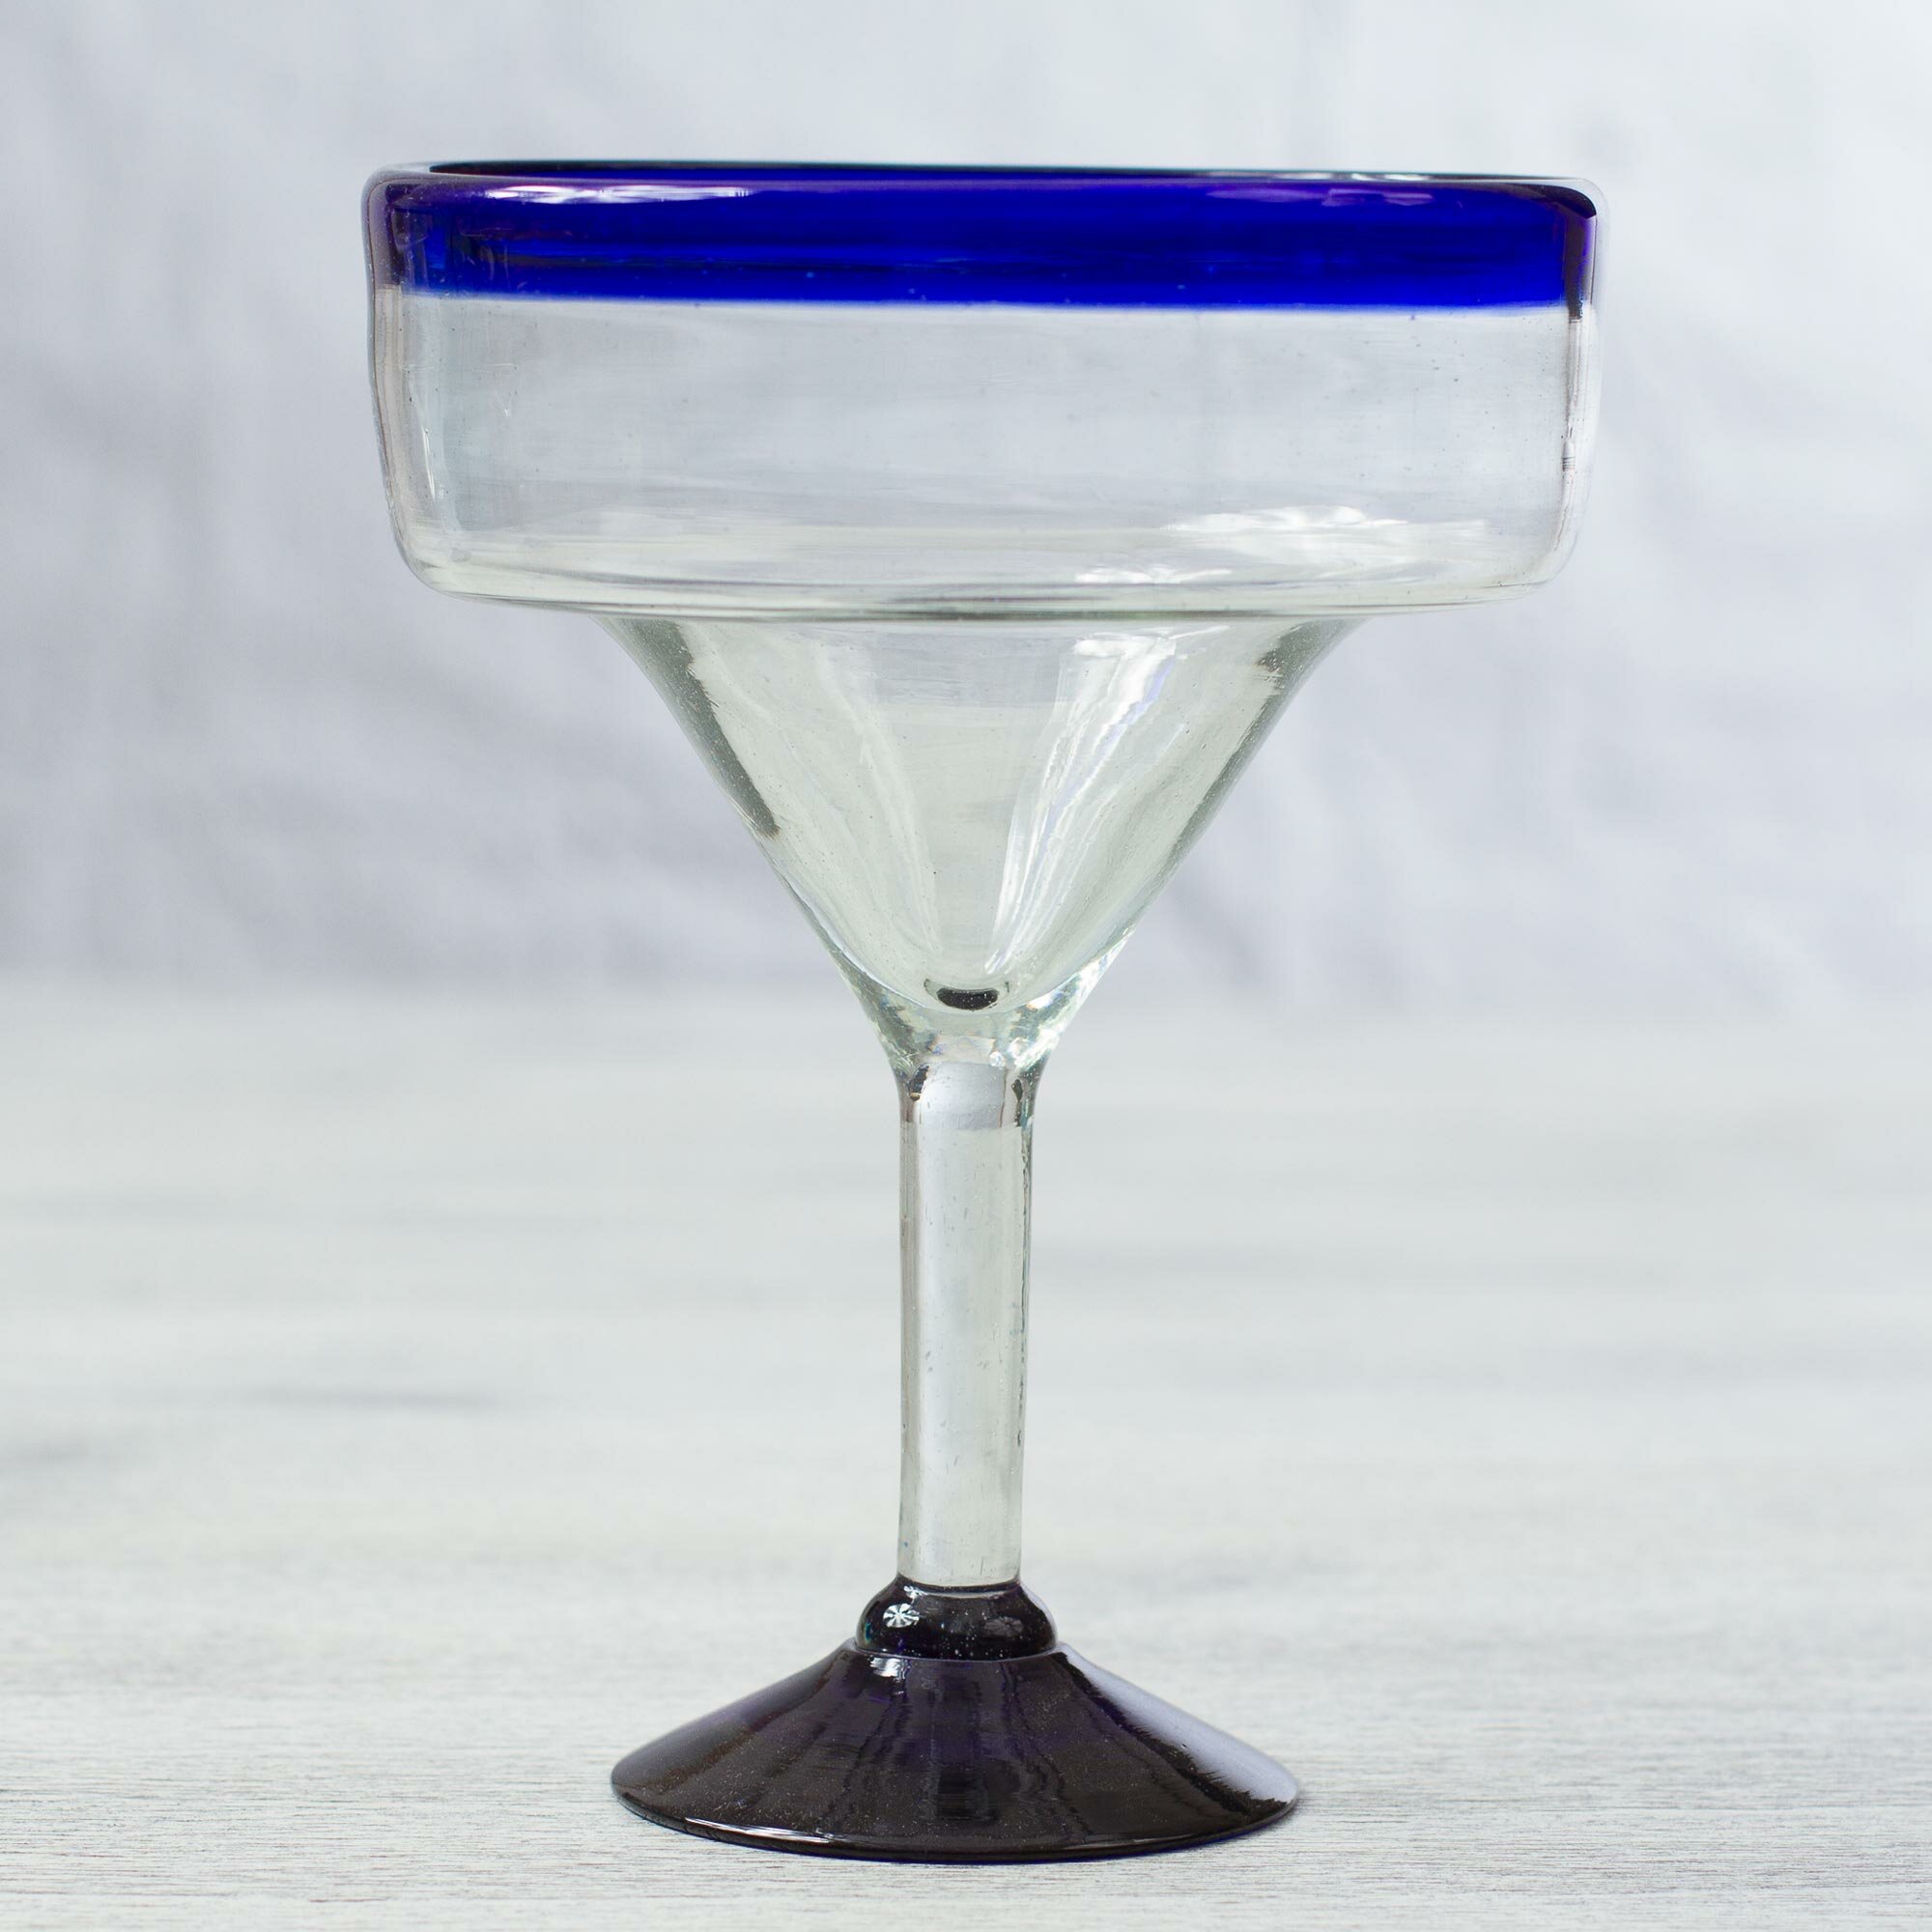 https://assets.wfcdn.com/im/20326741/compr-r85/4558/45588841/red-barrel-studio-schexnayder-6-piece-8oz-glass-stemless-wine-glass-glassware-set.jpg